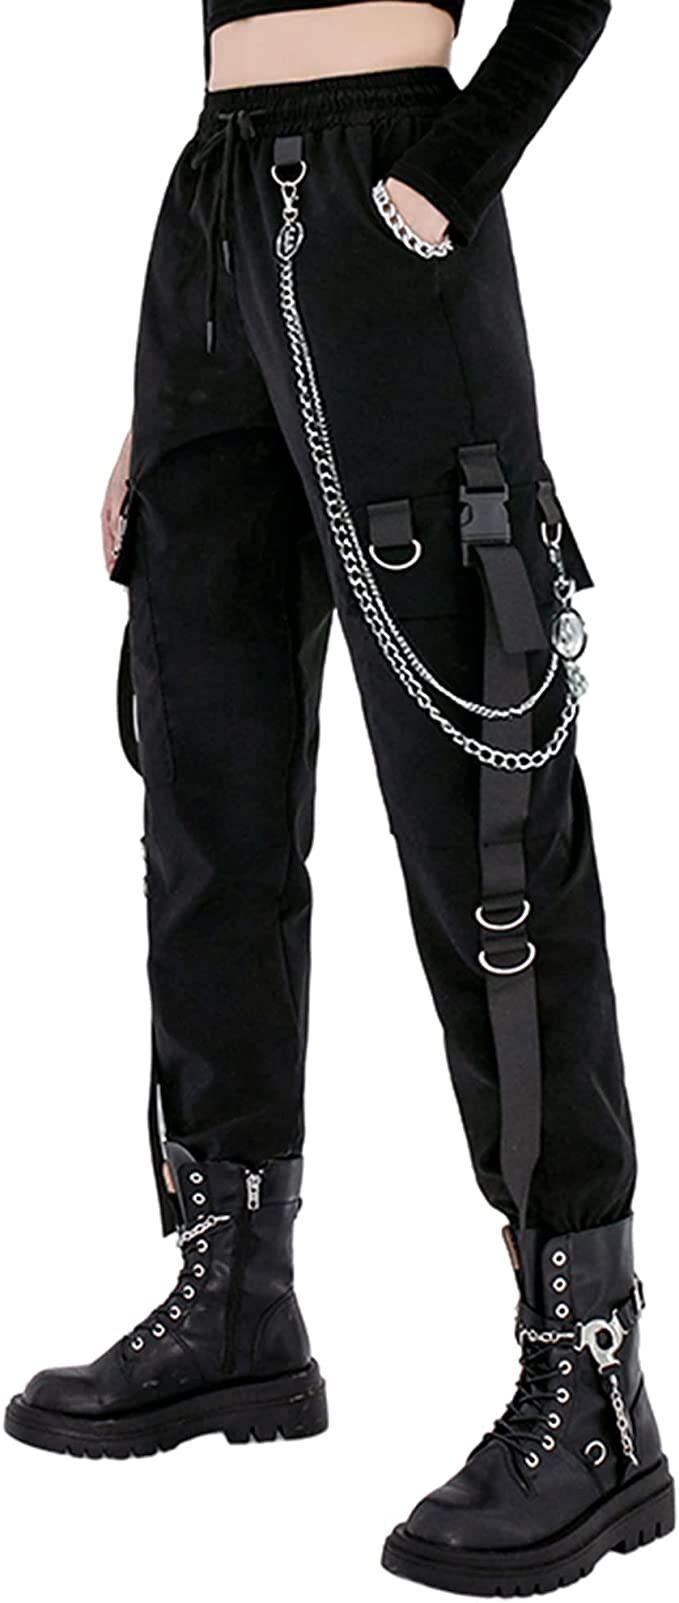 Go stylish with black cargo pants